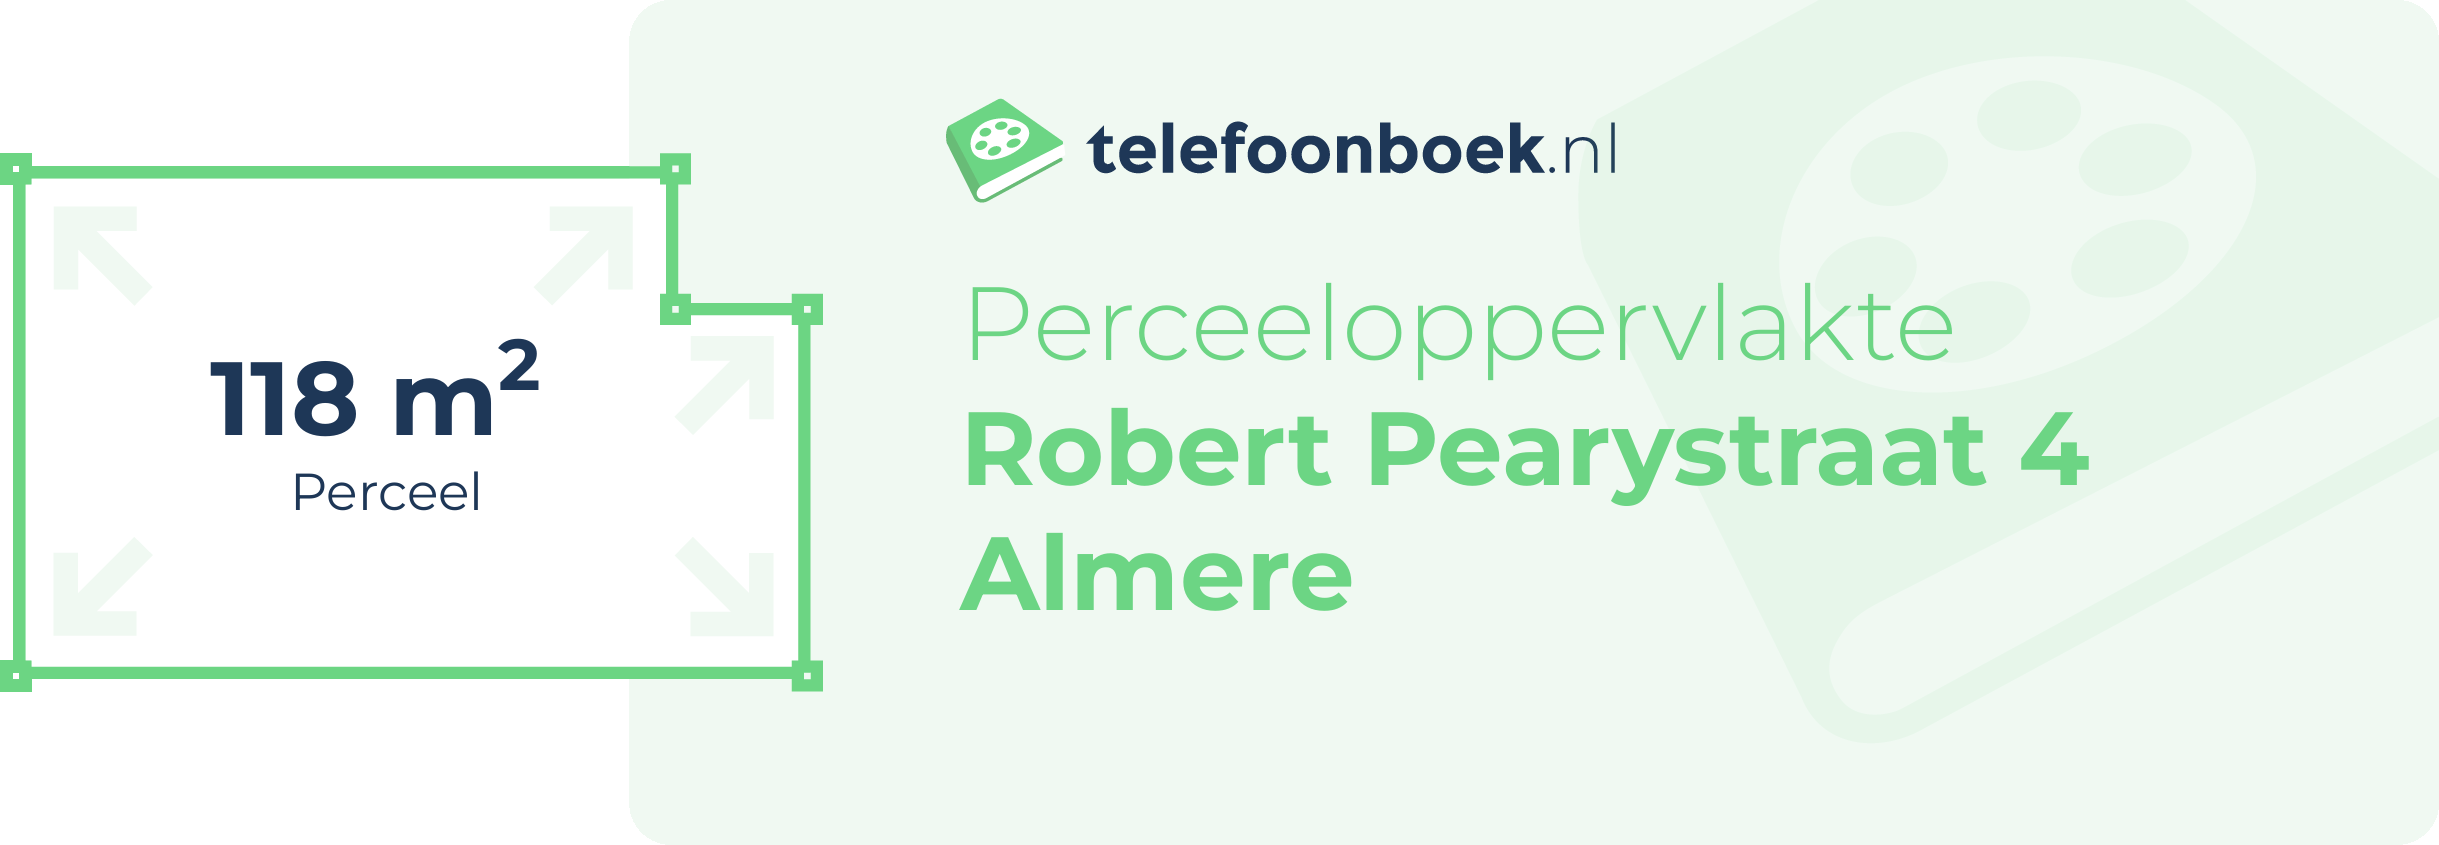 Perceeloppervlakte Robert Pearystraat 4 Almere